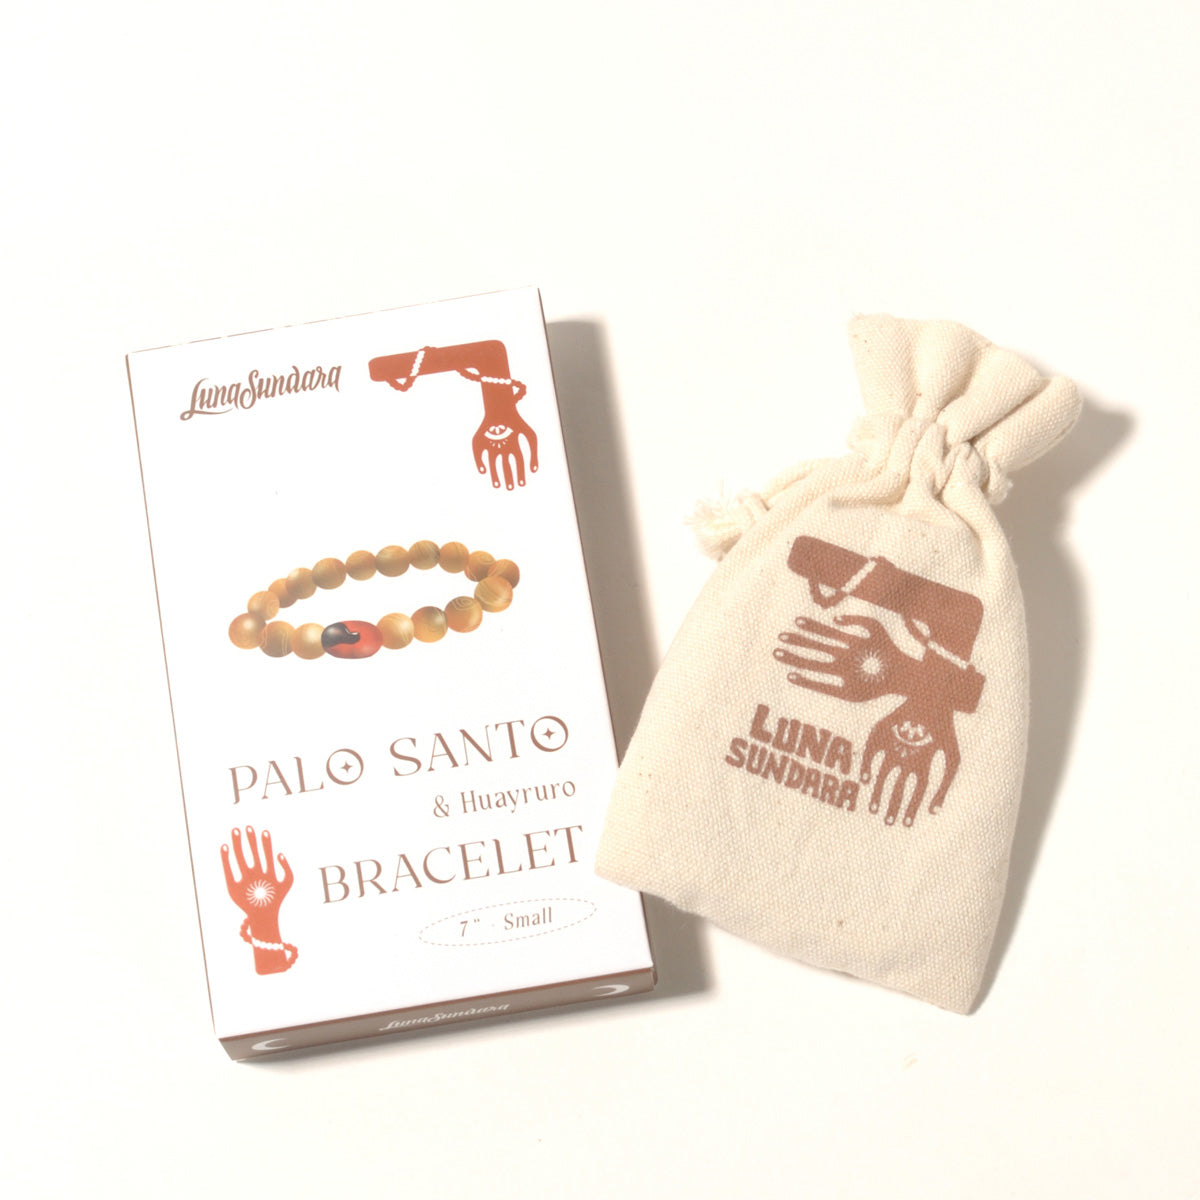 ルナスンダラ (Luna Sundara) Palo Santo and Huayruro Bracelet パロサントxワイルーロ ブレスレット